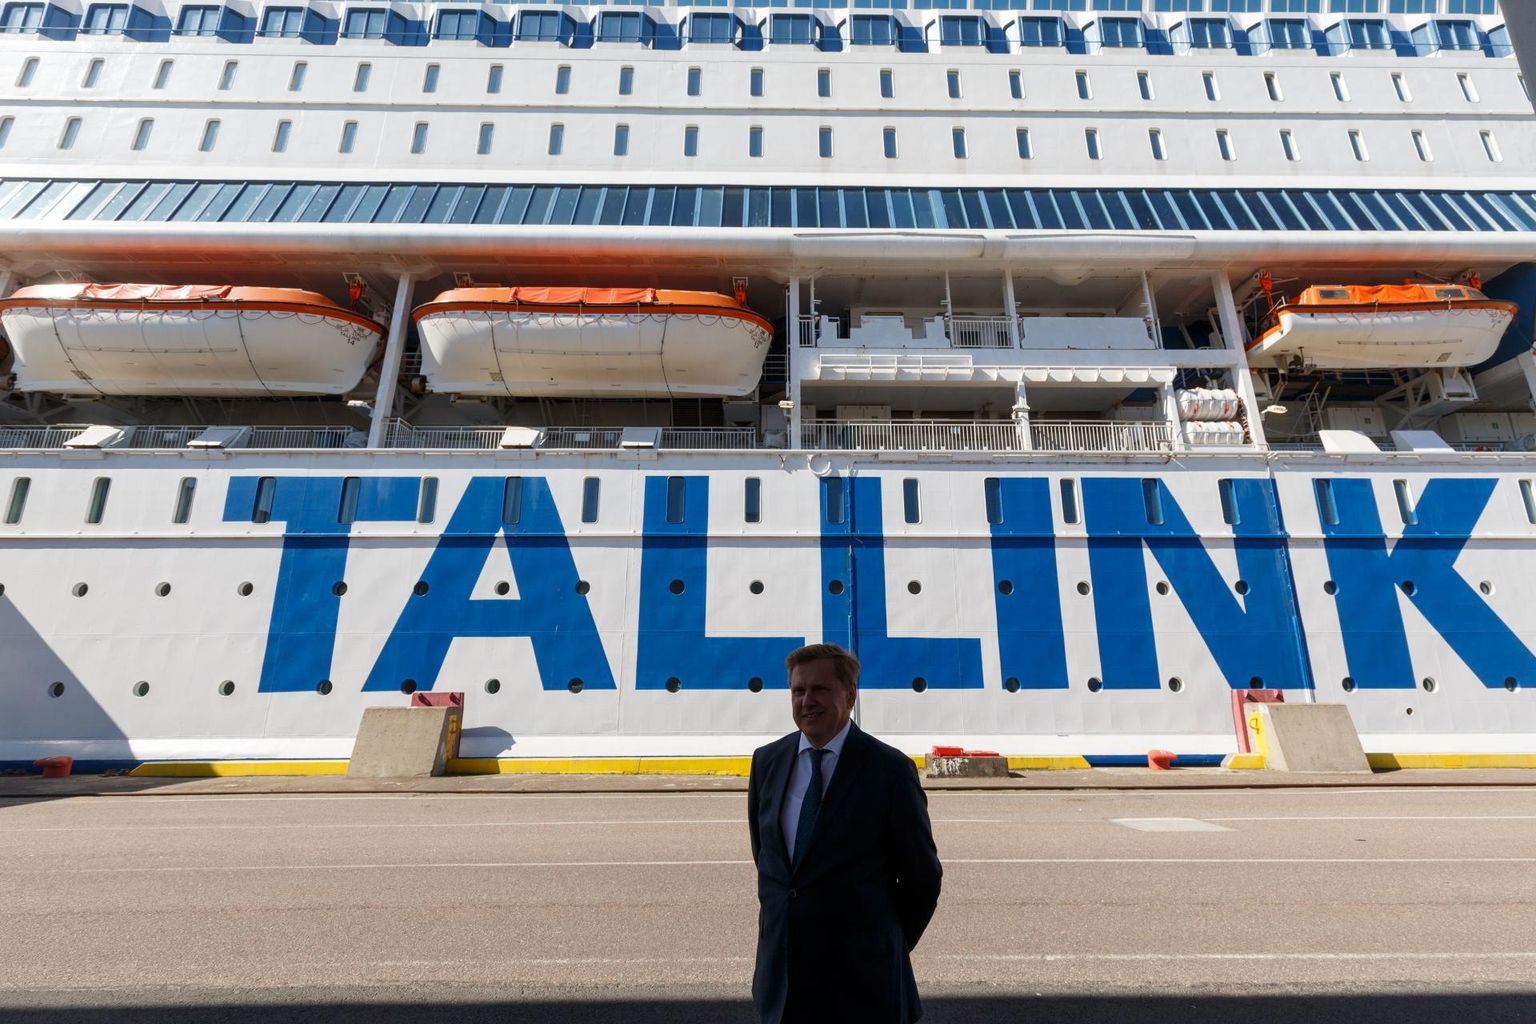 Tallink teatas eile, et alustab Eesti lipu all sõitvate laevade personali kollektiivset koondamist, see puudutab umbes 190 ametikohta. Lisaks koondatakse ligemale 60 hotellitöötajat.